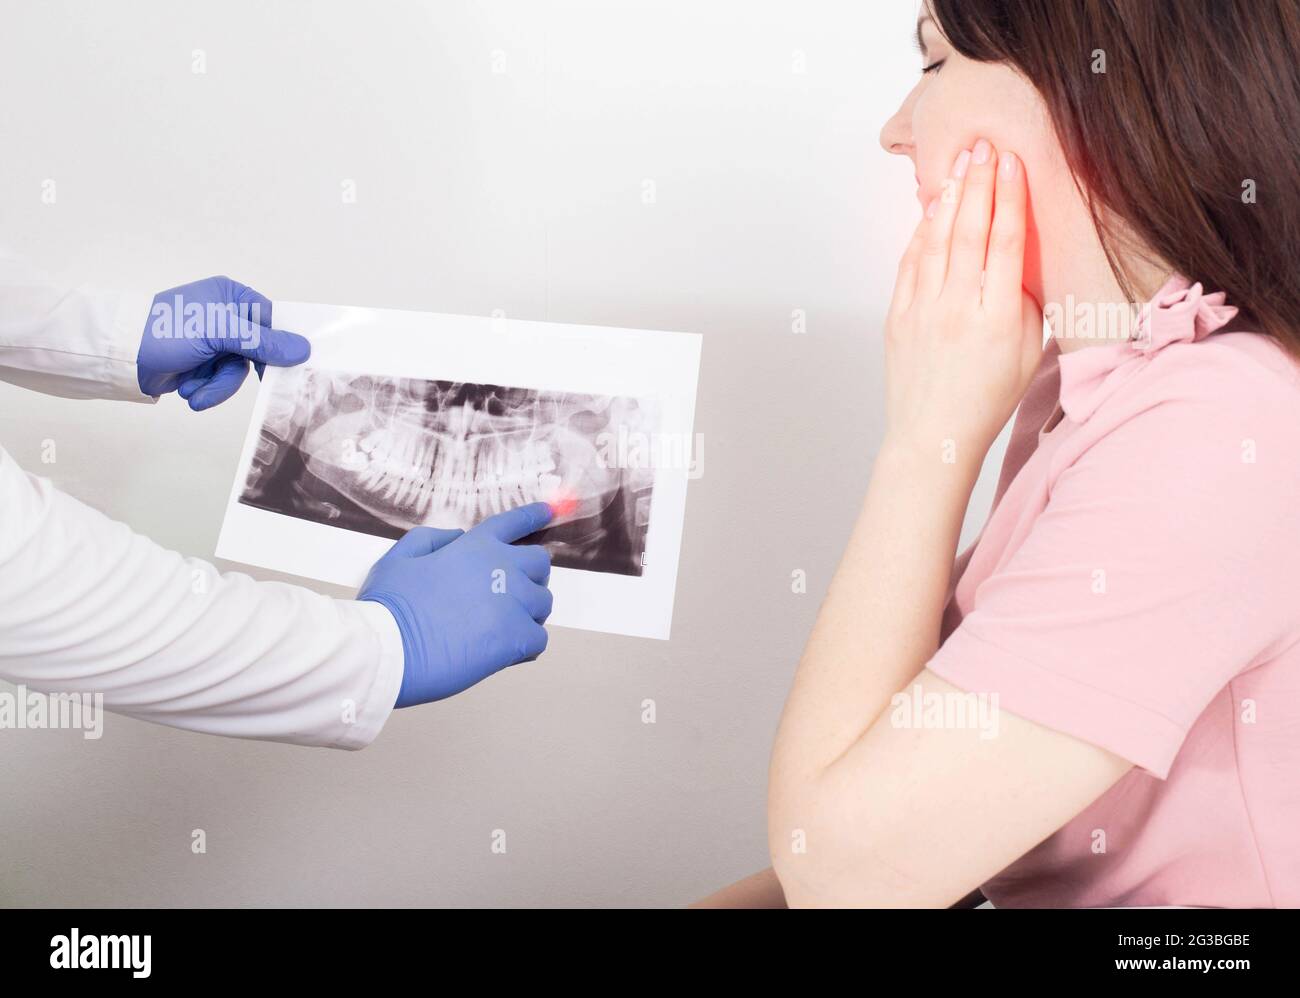 Un dentiste possède une image panoramique d'une patiente présentant un kyste dentaire enflammé, un néoplasme. Retrait d'un kyste dentaire, malig Banque D'Images